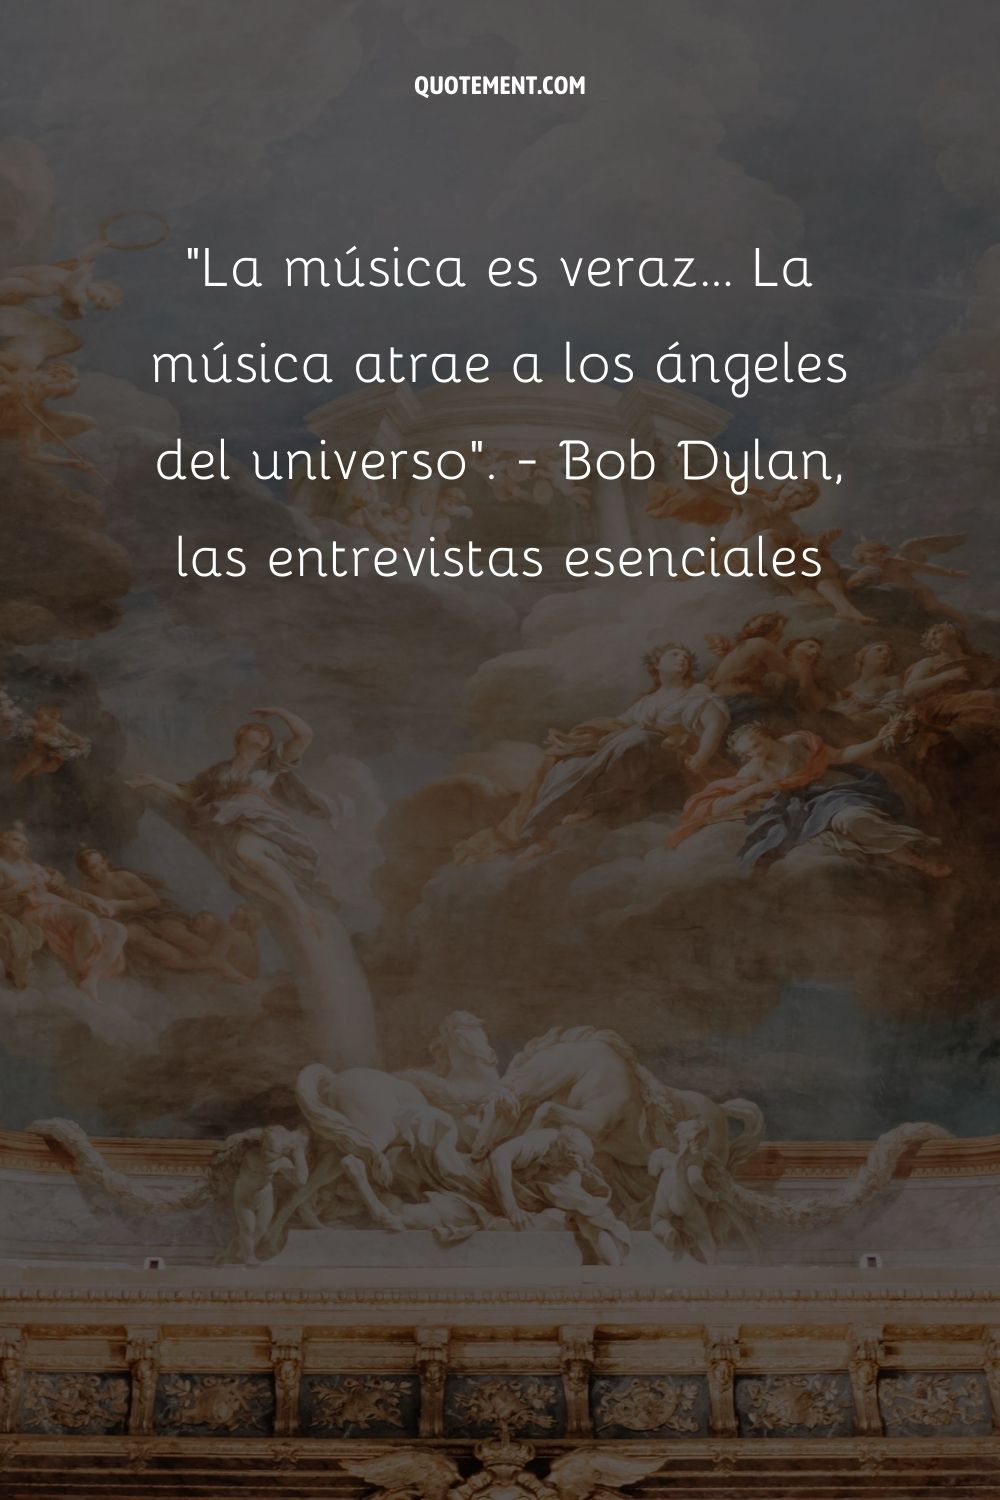 La música atrae a los ángeles del universo.